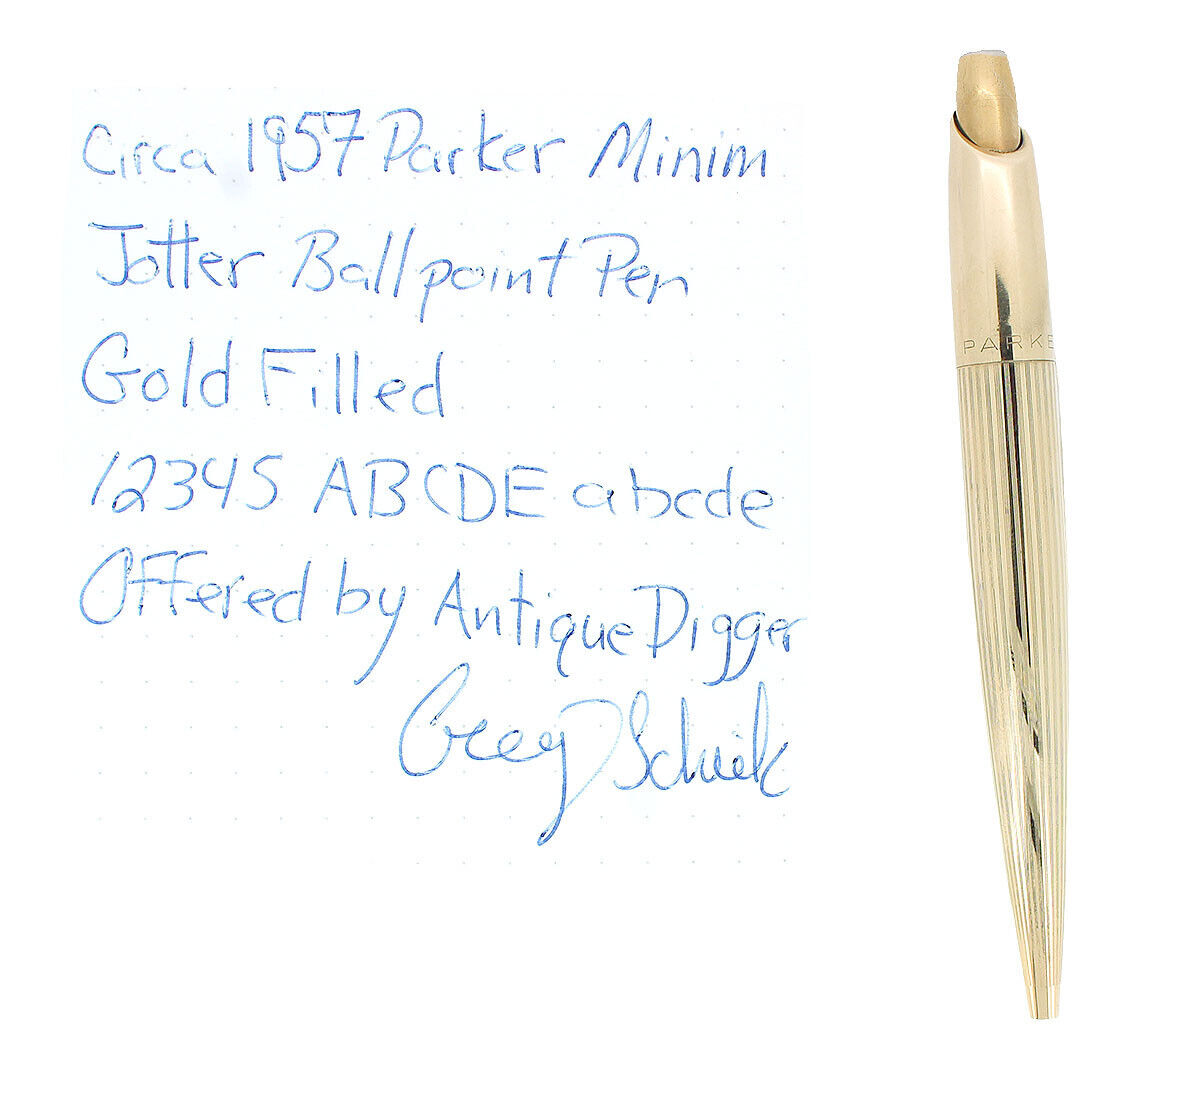 Circa 1957 Parker Minim "shorty" Jotter Gold Plate Ballpoint Pen